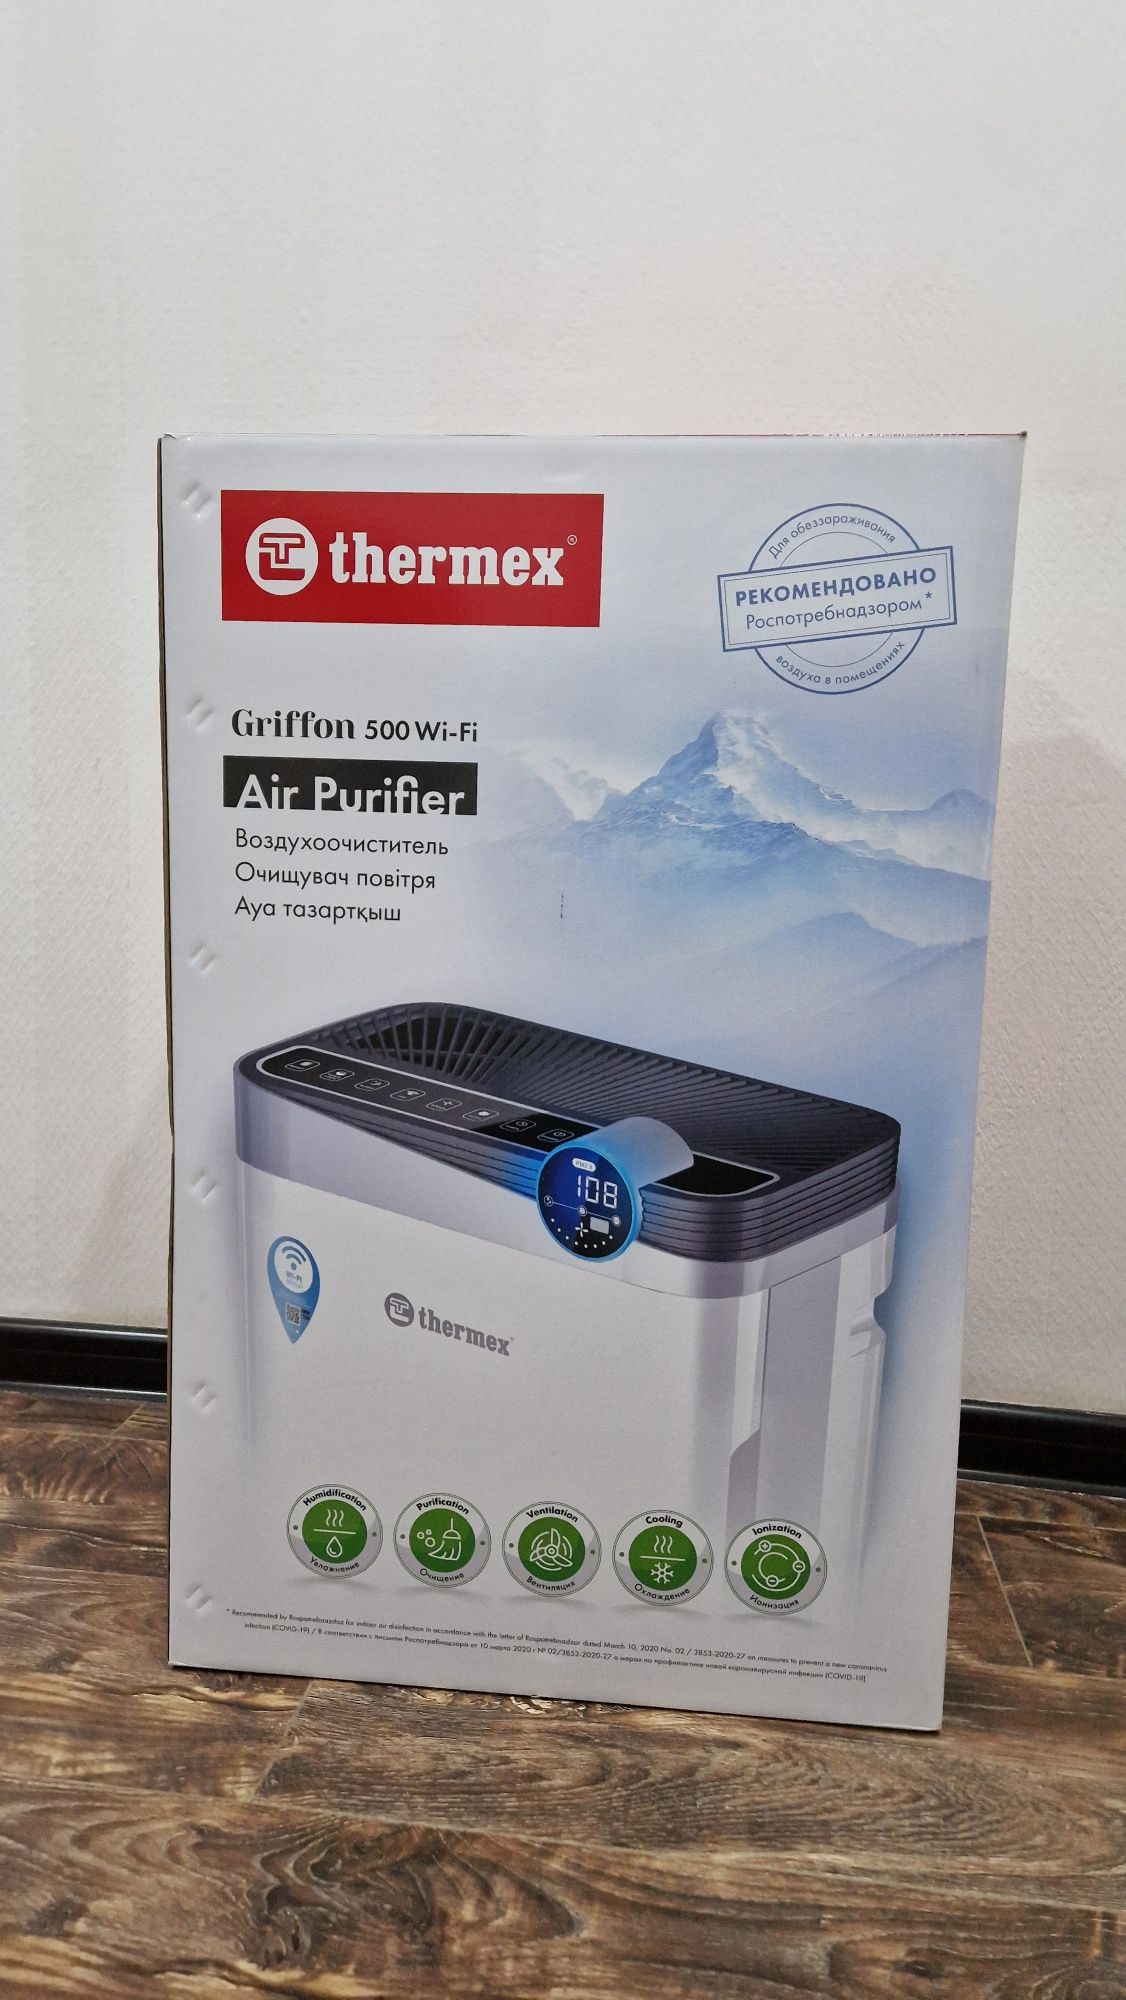 Воздухоочиститель -увлажнитель  Thermex Griffon 500